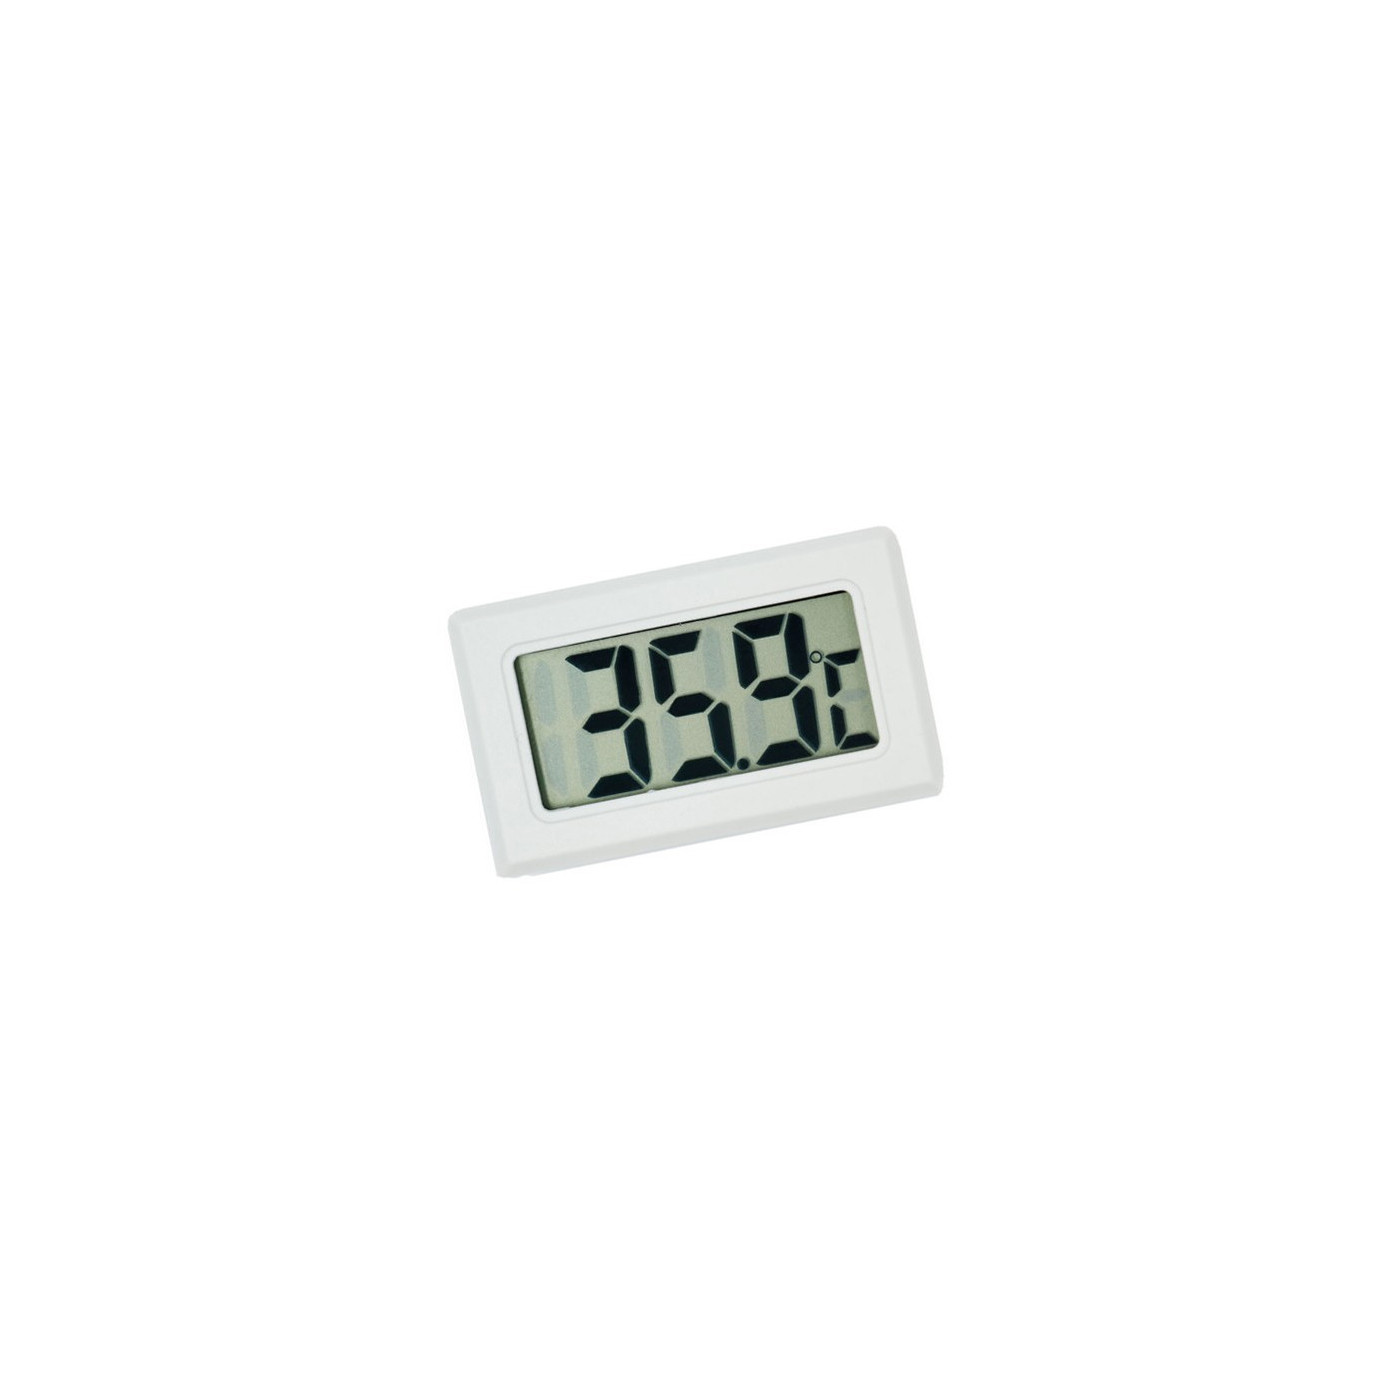 LCD indoor temperature meter (white)